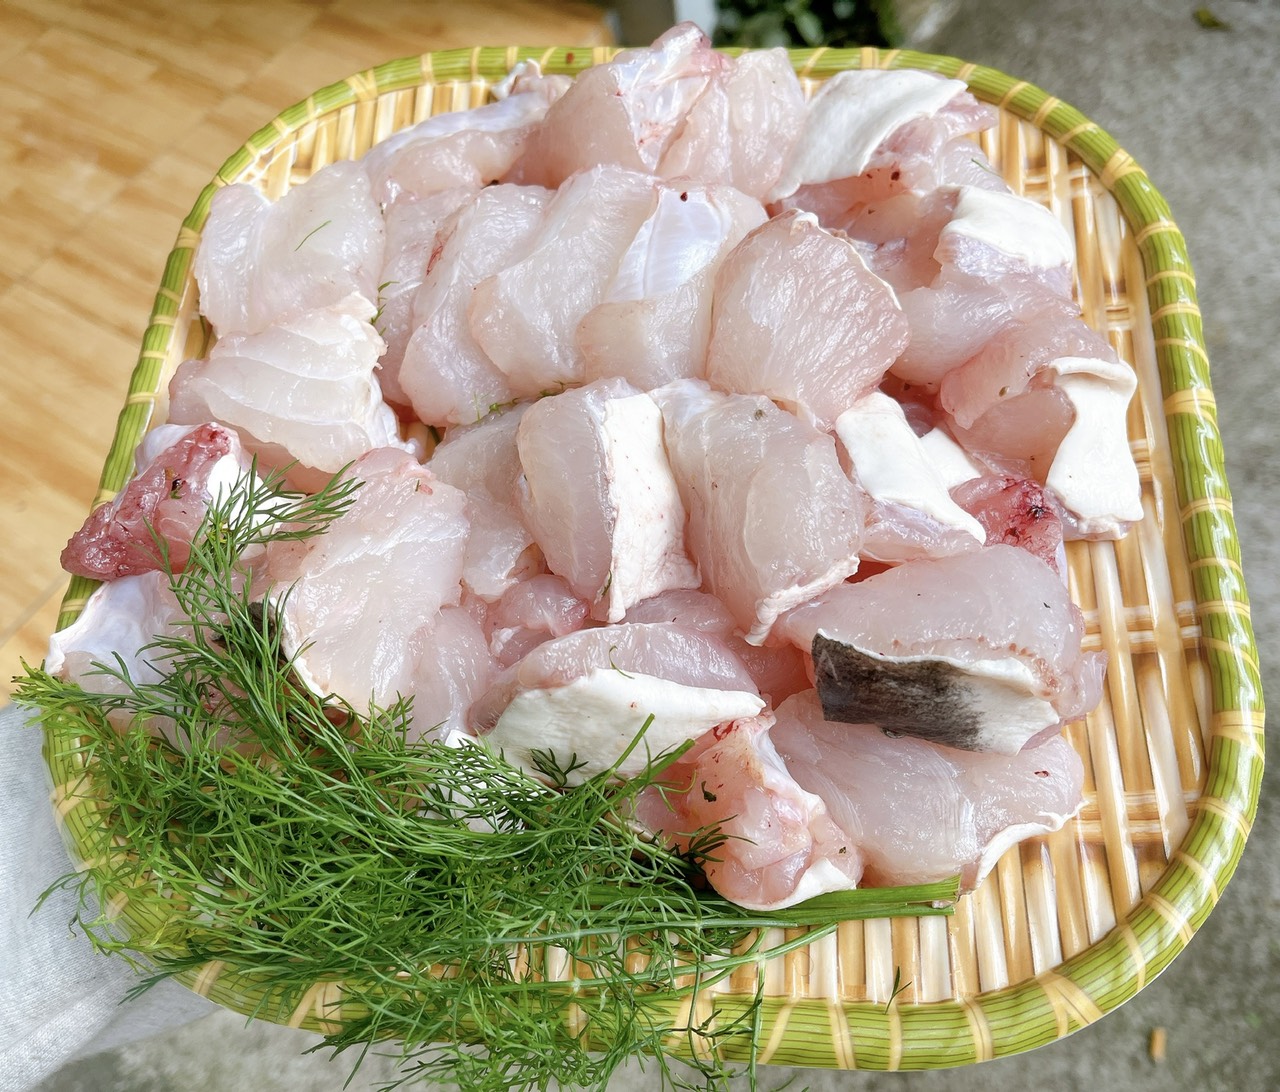 Thịt cá lăng sông Sêrêpốk không chỉ săn chắc, dai mà còn có vị ngọt đặc trưng